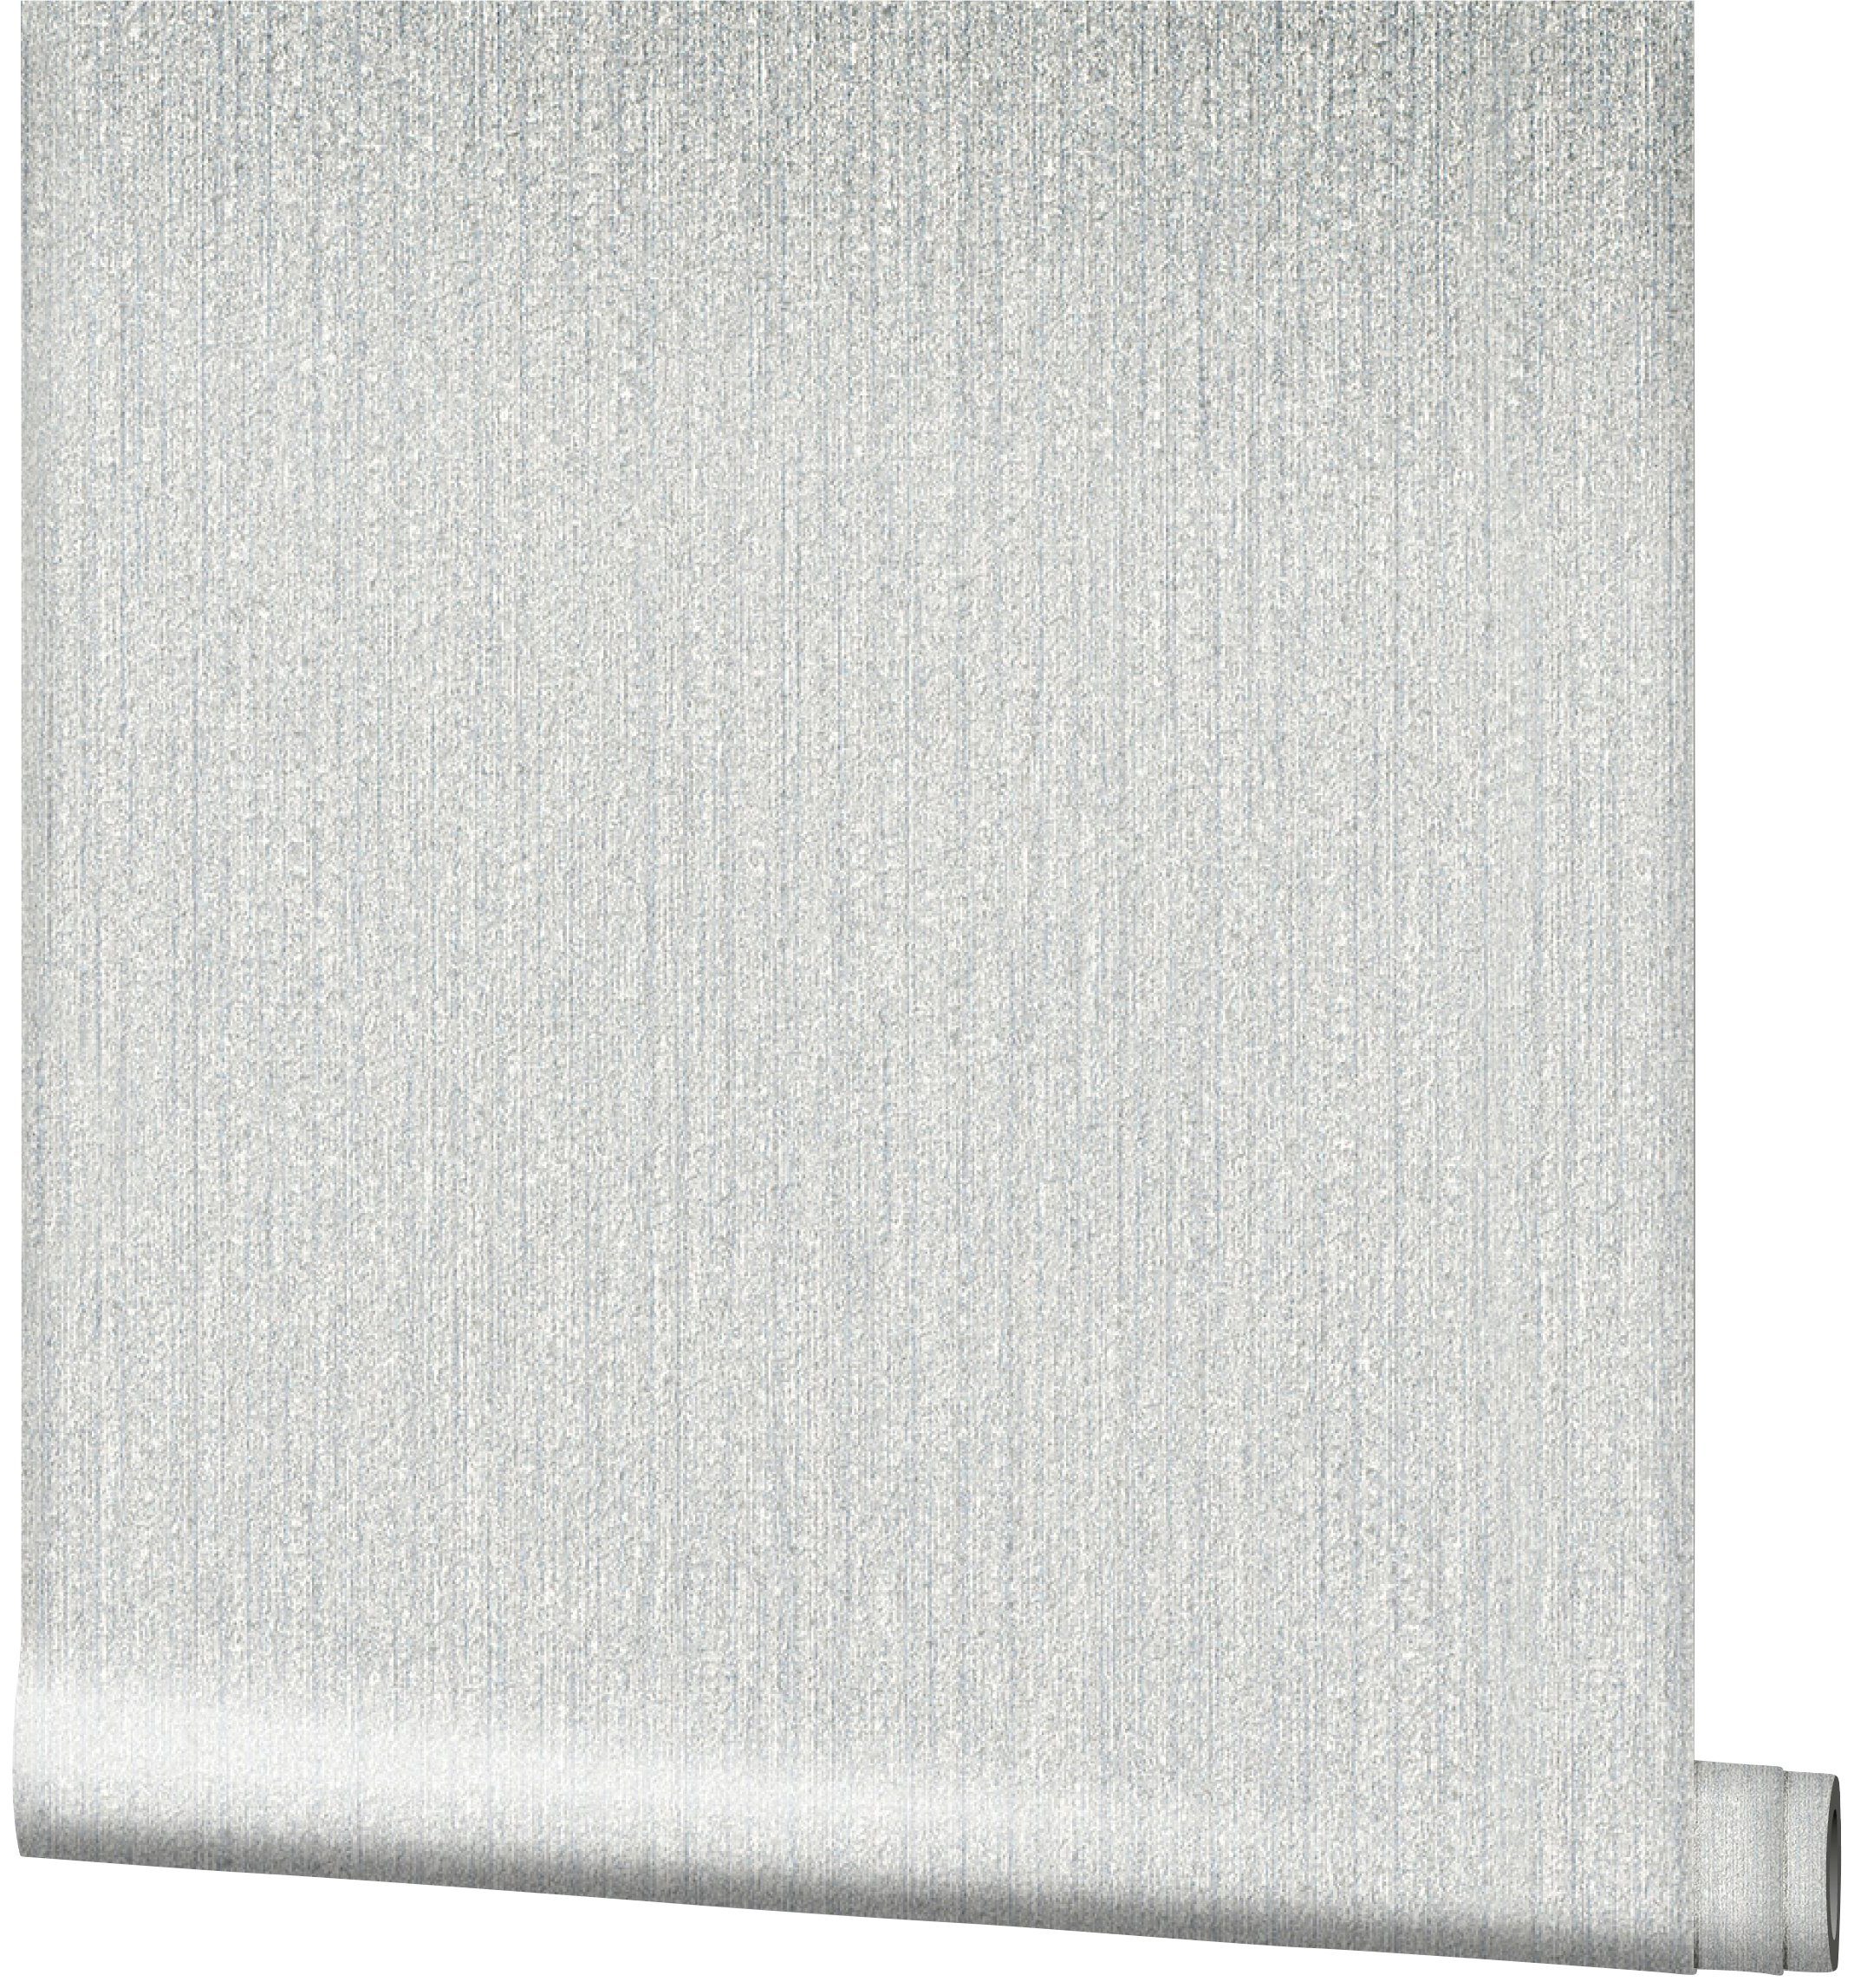 SCHÖNER WOHNEN-Kollektion Vliestapete, realistisch, 10,05 beige Meter 0,53 x